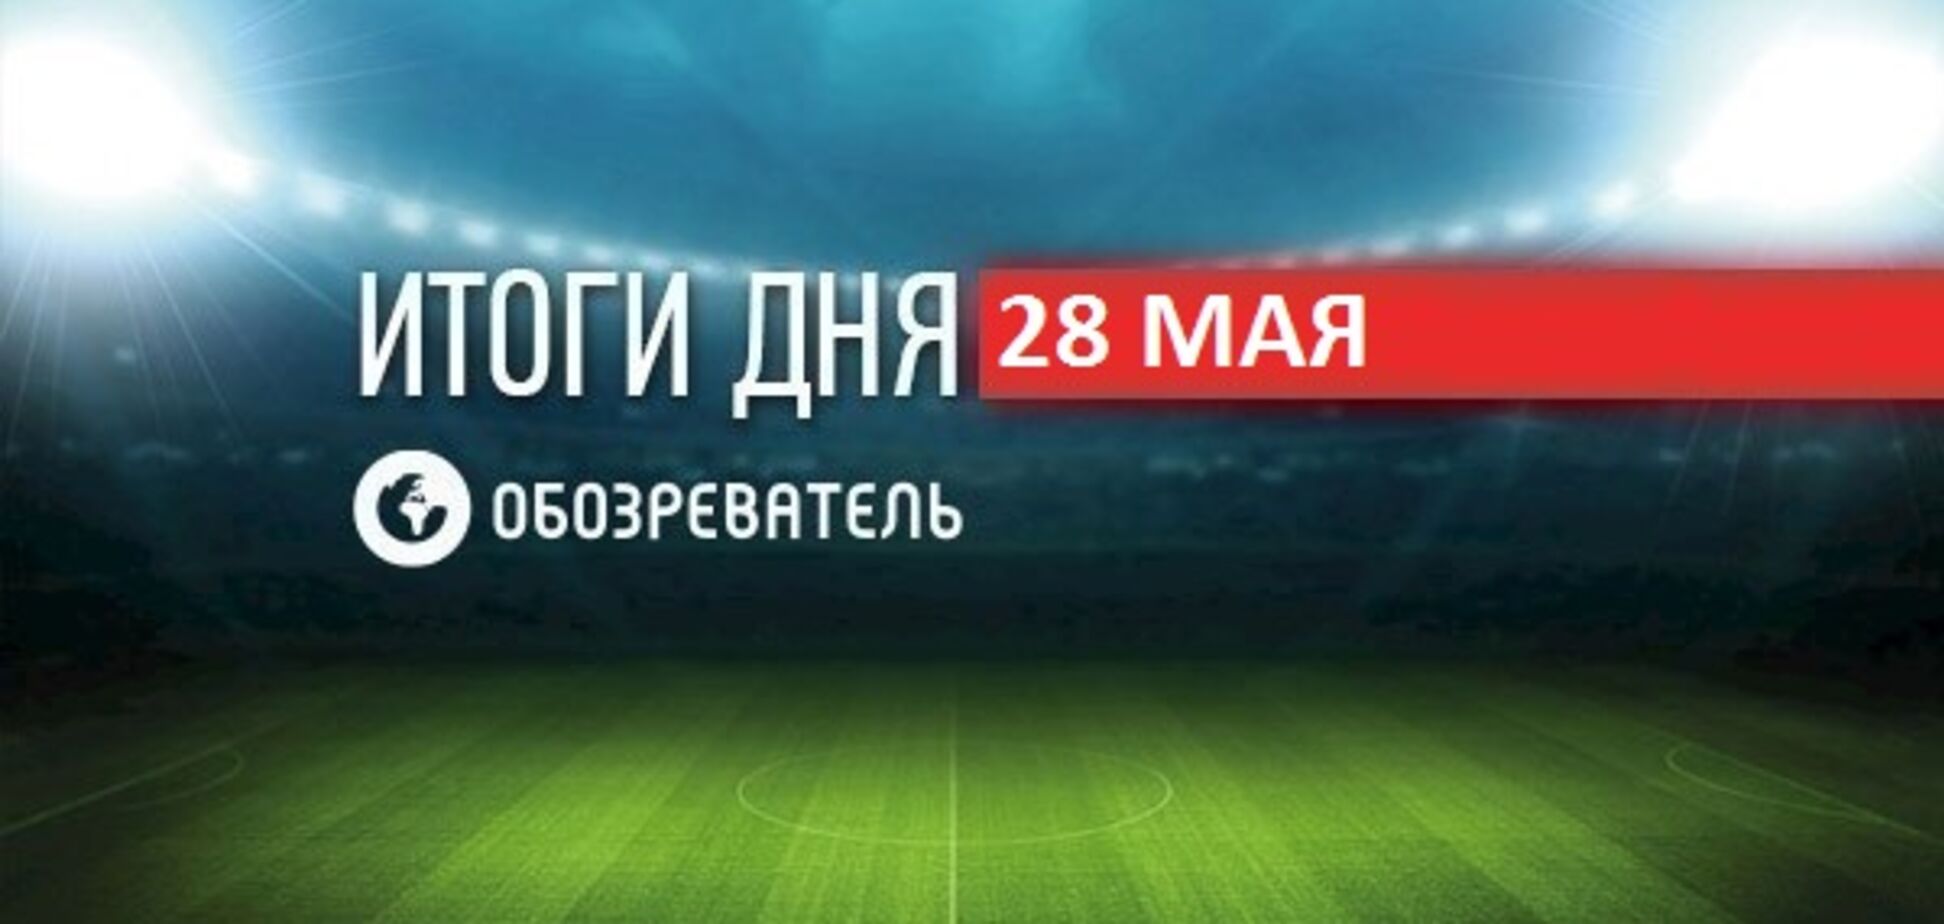 Росія назвала дату бою Усик - Гассієв: спортивні підсумки 28 травня